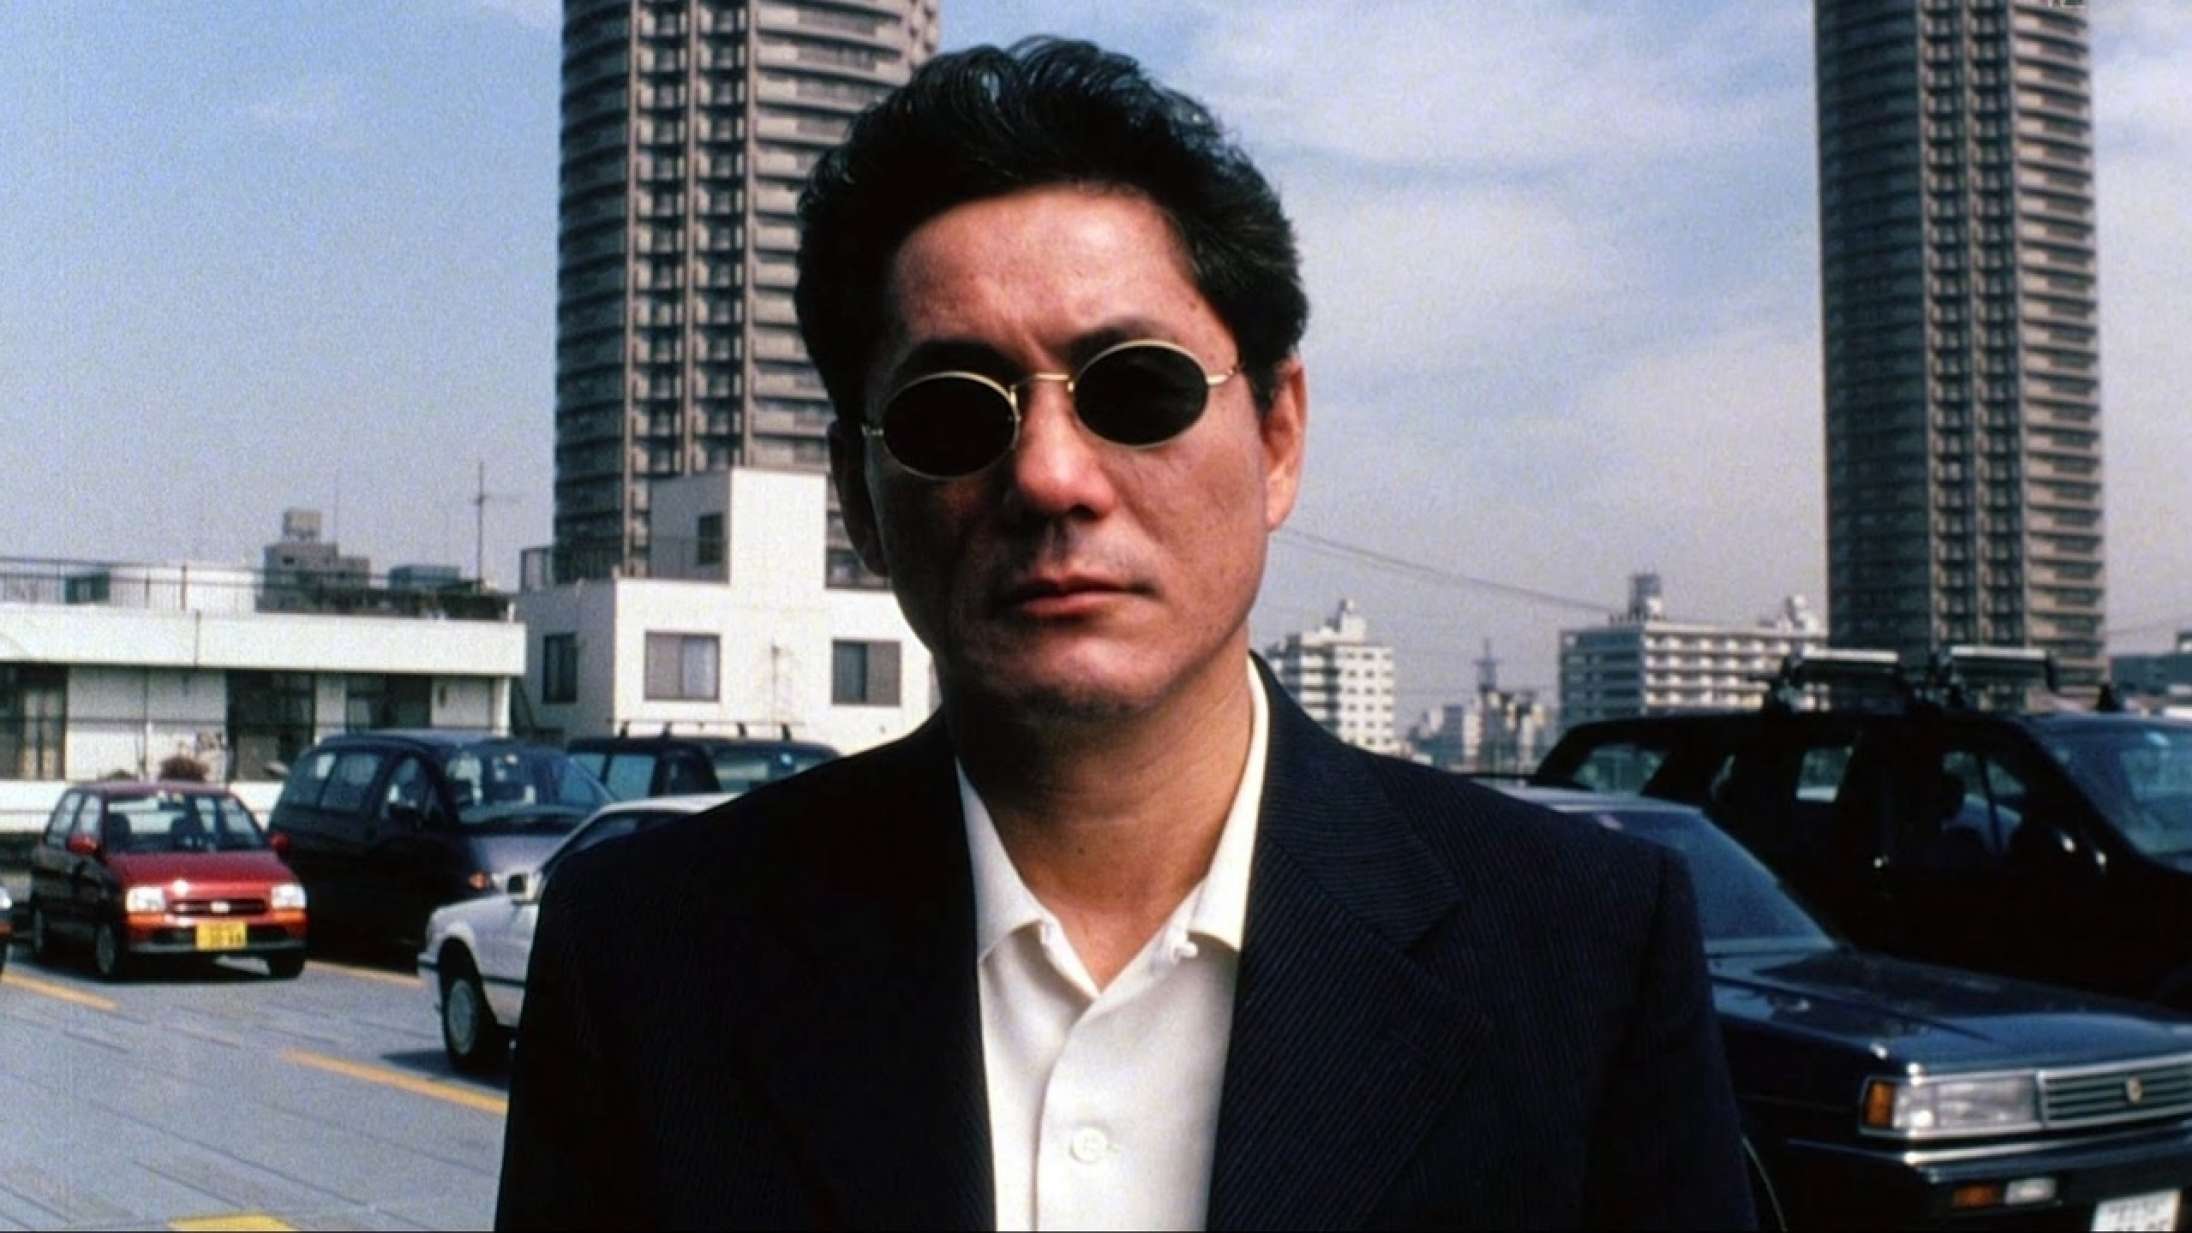 Den japanske filmskaber Takeshi Kitanos bil angrebet af mand med økse